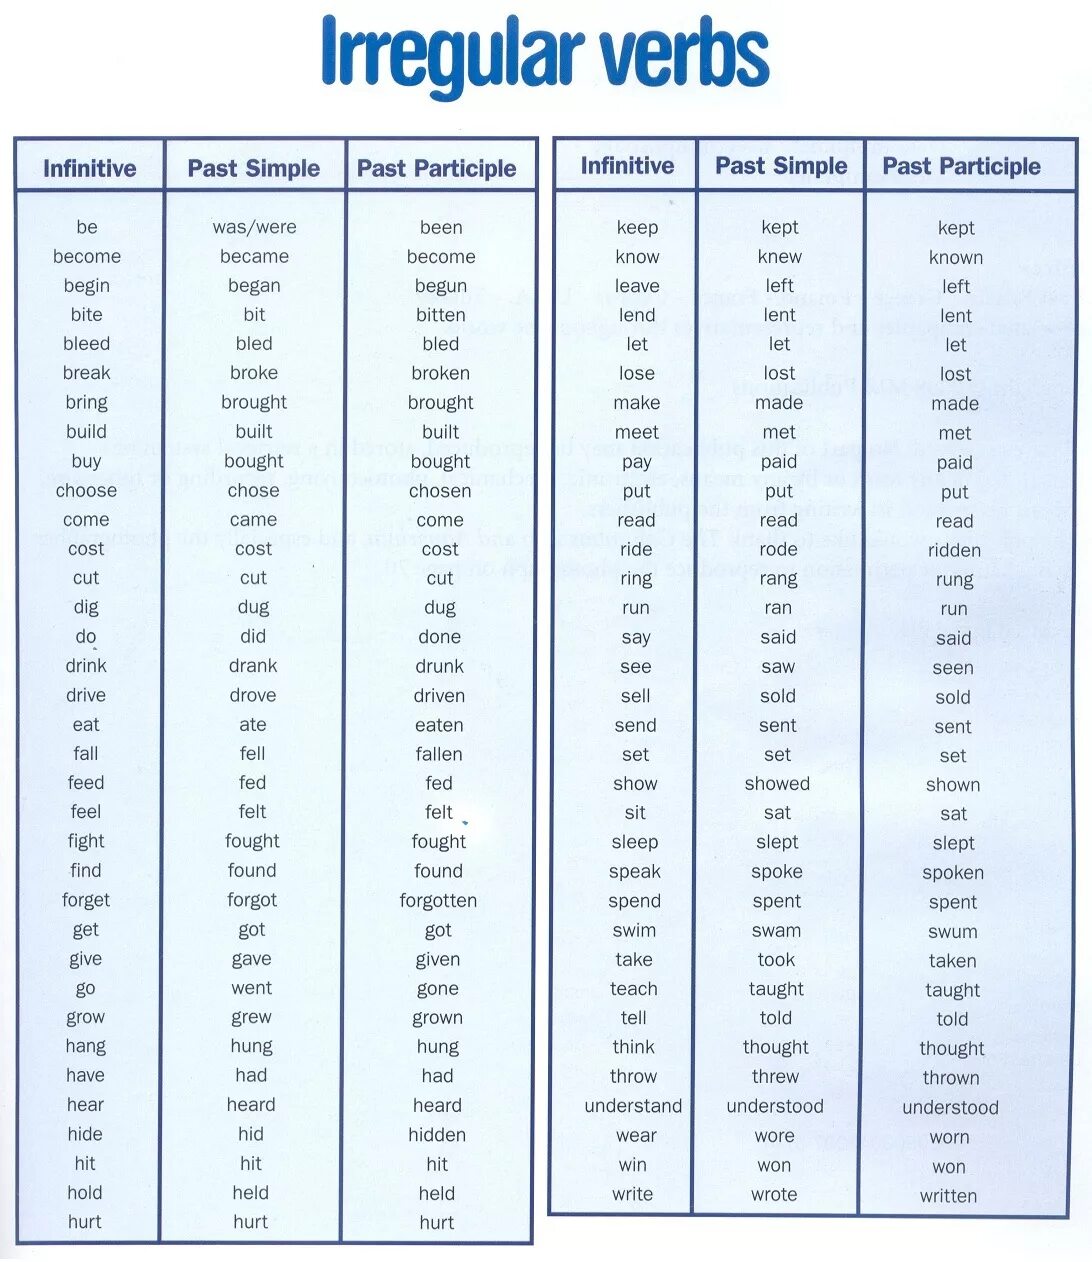 Как переводится слово do на русский. Past simple Irregular verbs таблица. Past simple таблица неправильных глаголов. Неправильные глаголы английского Irregular verbs. Past participle таблица неправильных глаголов.